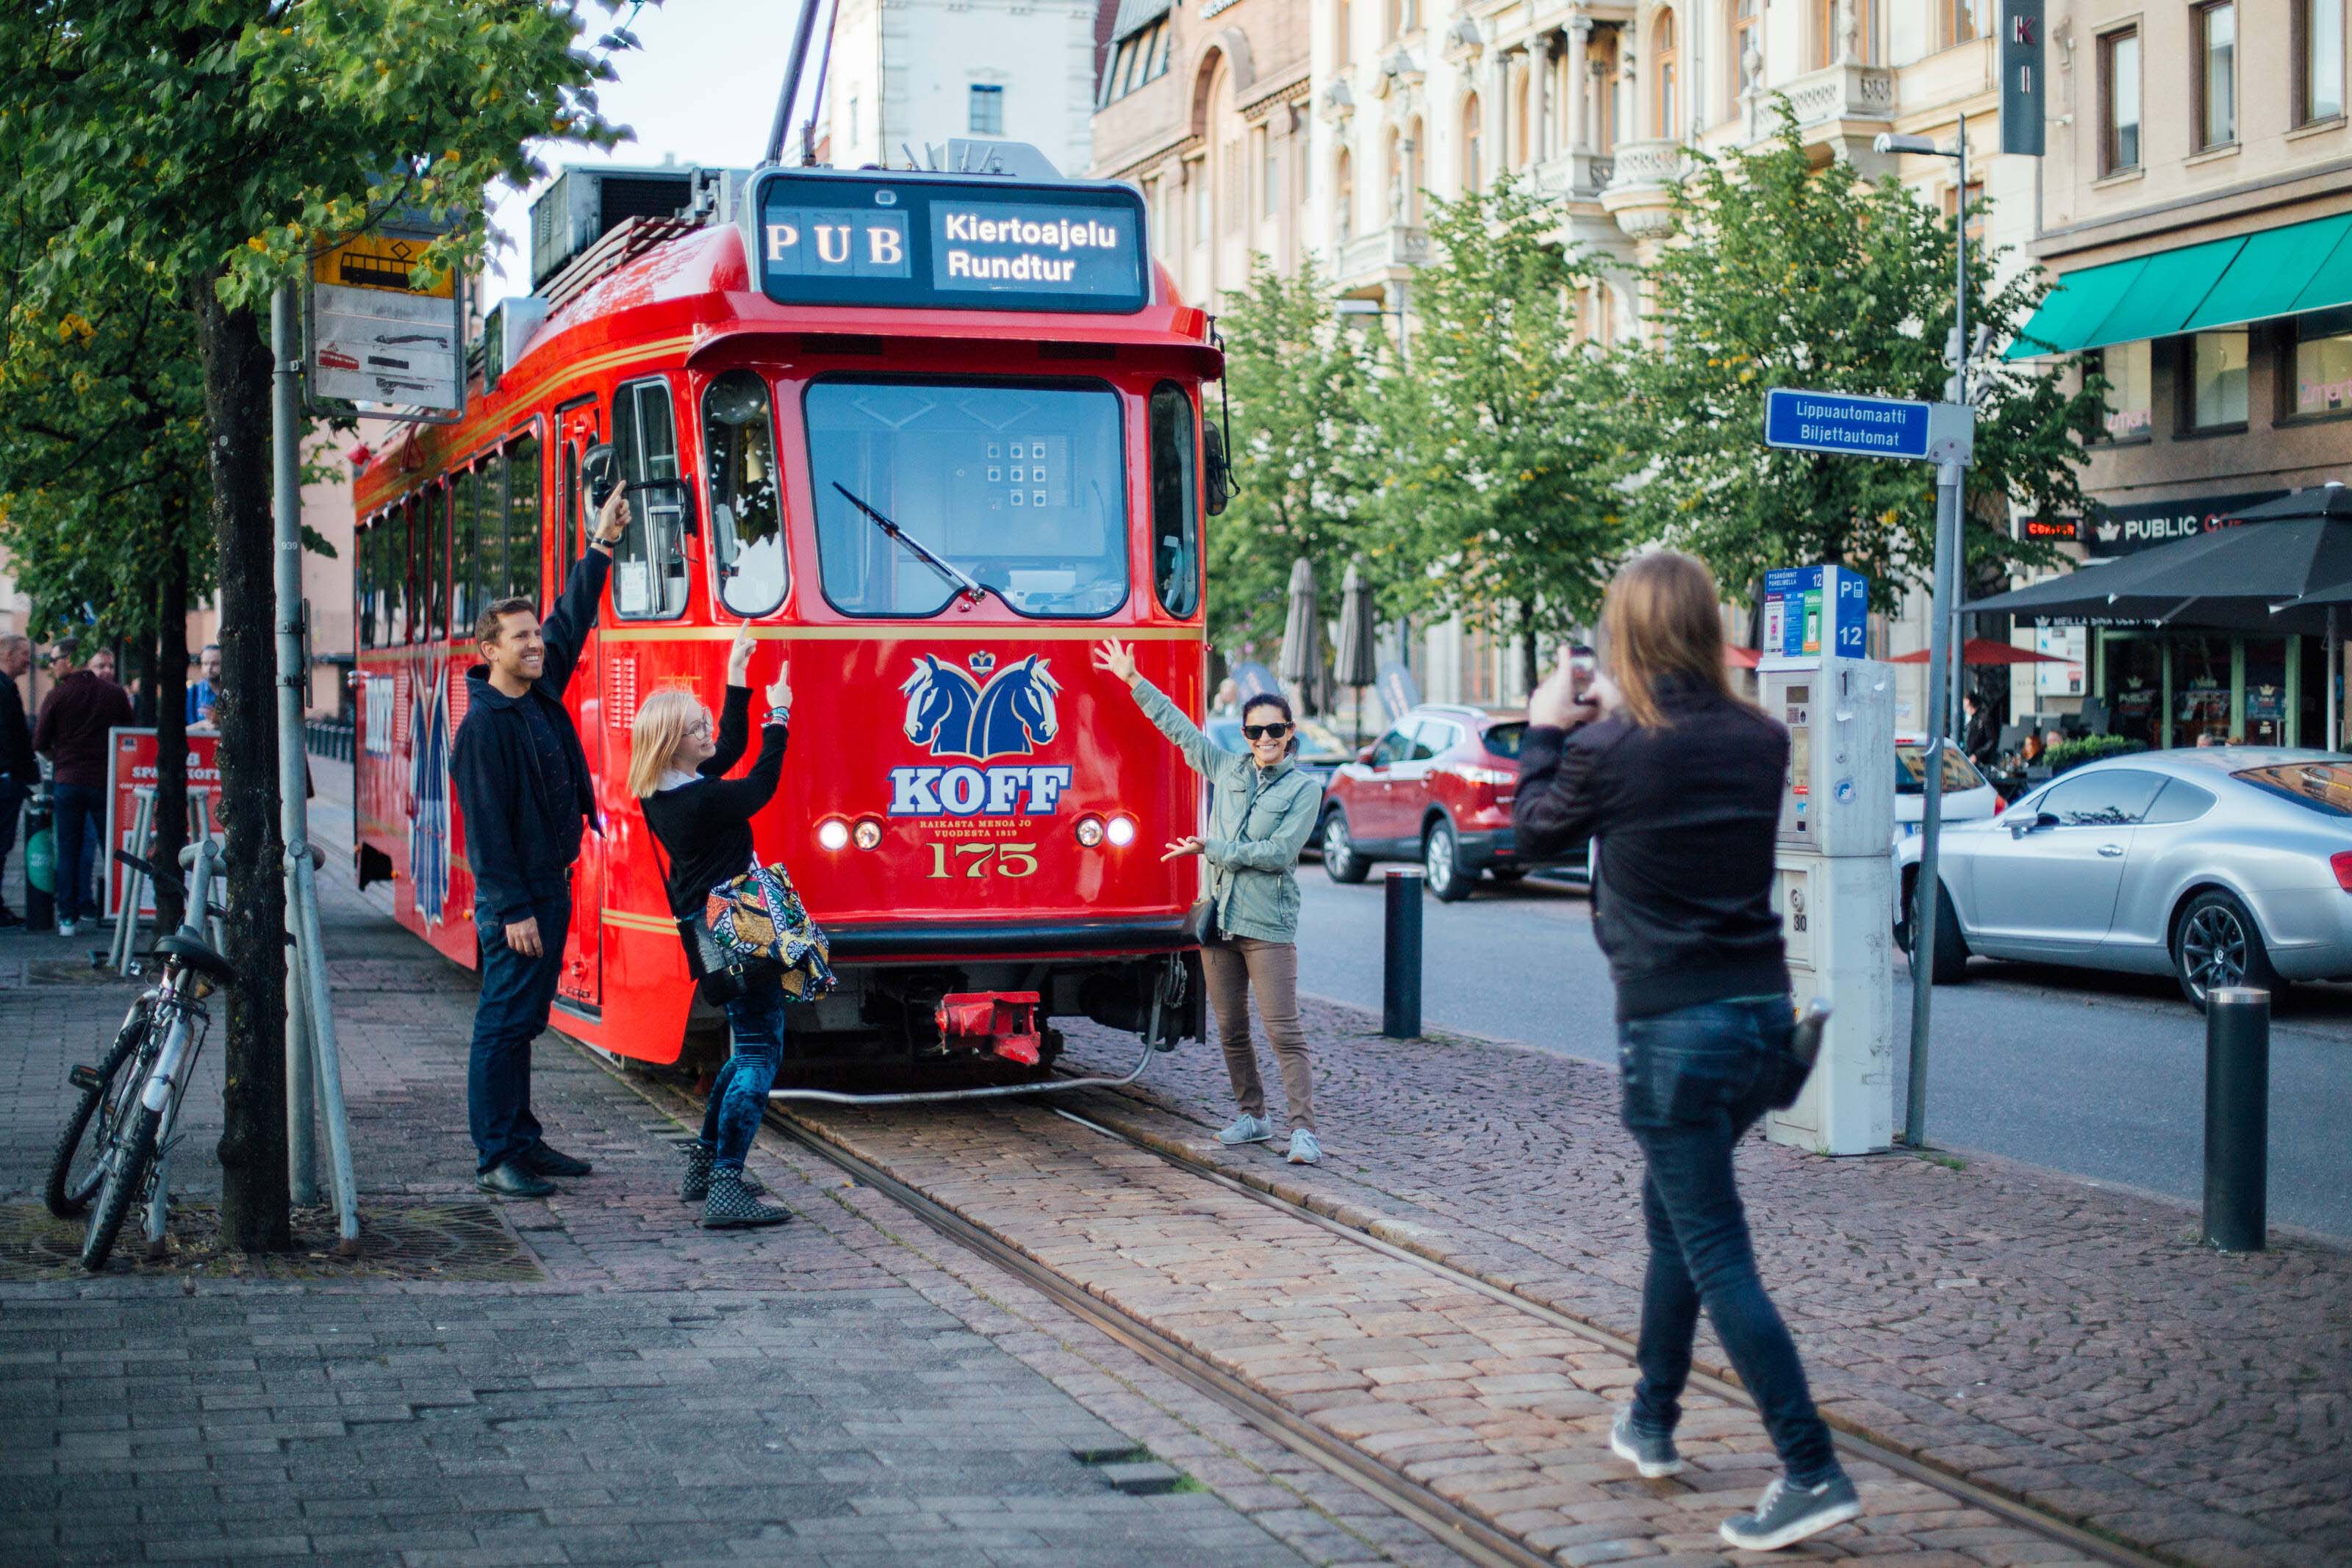 People in front of a red tram in Helsinki